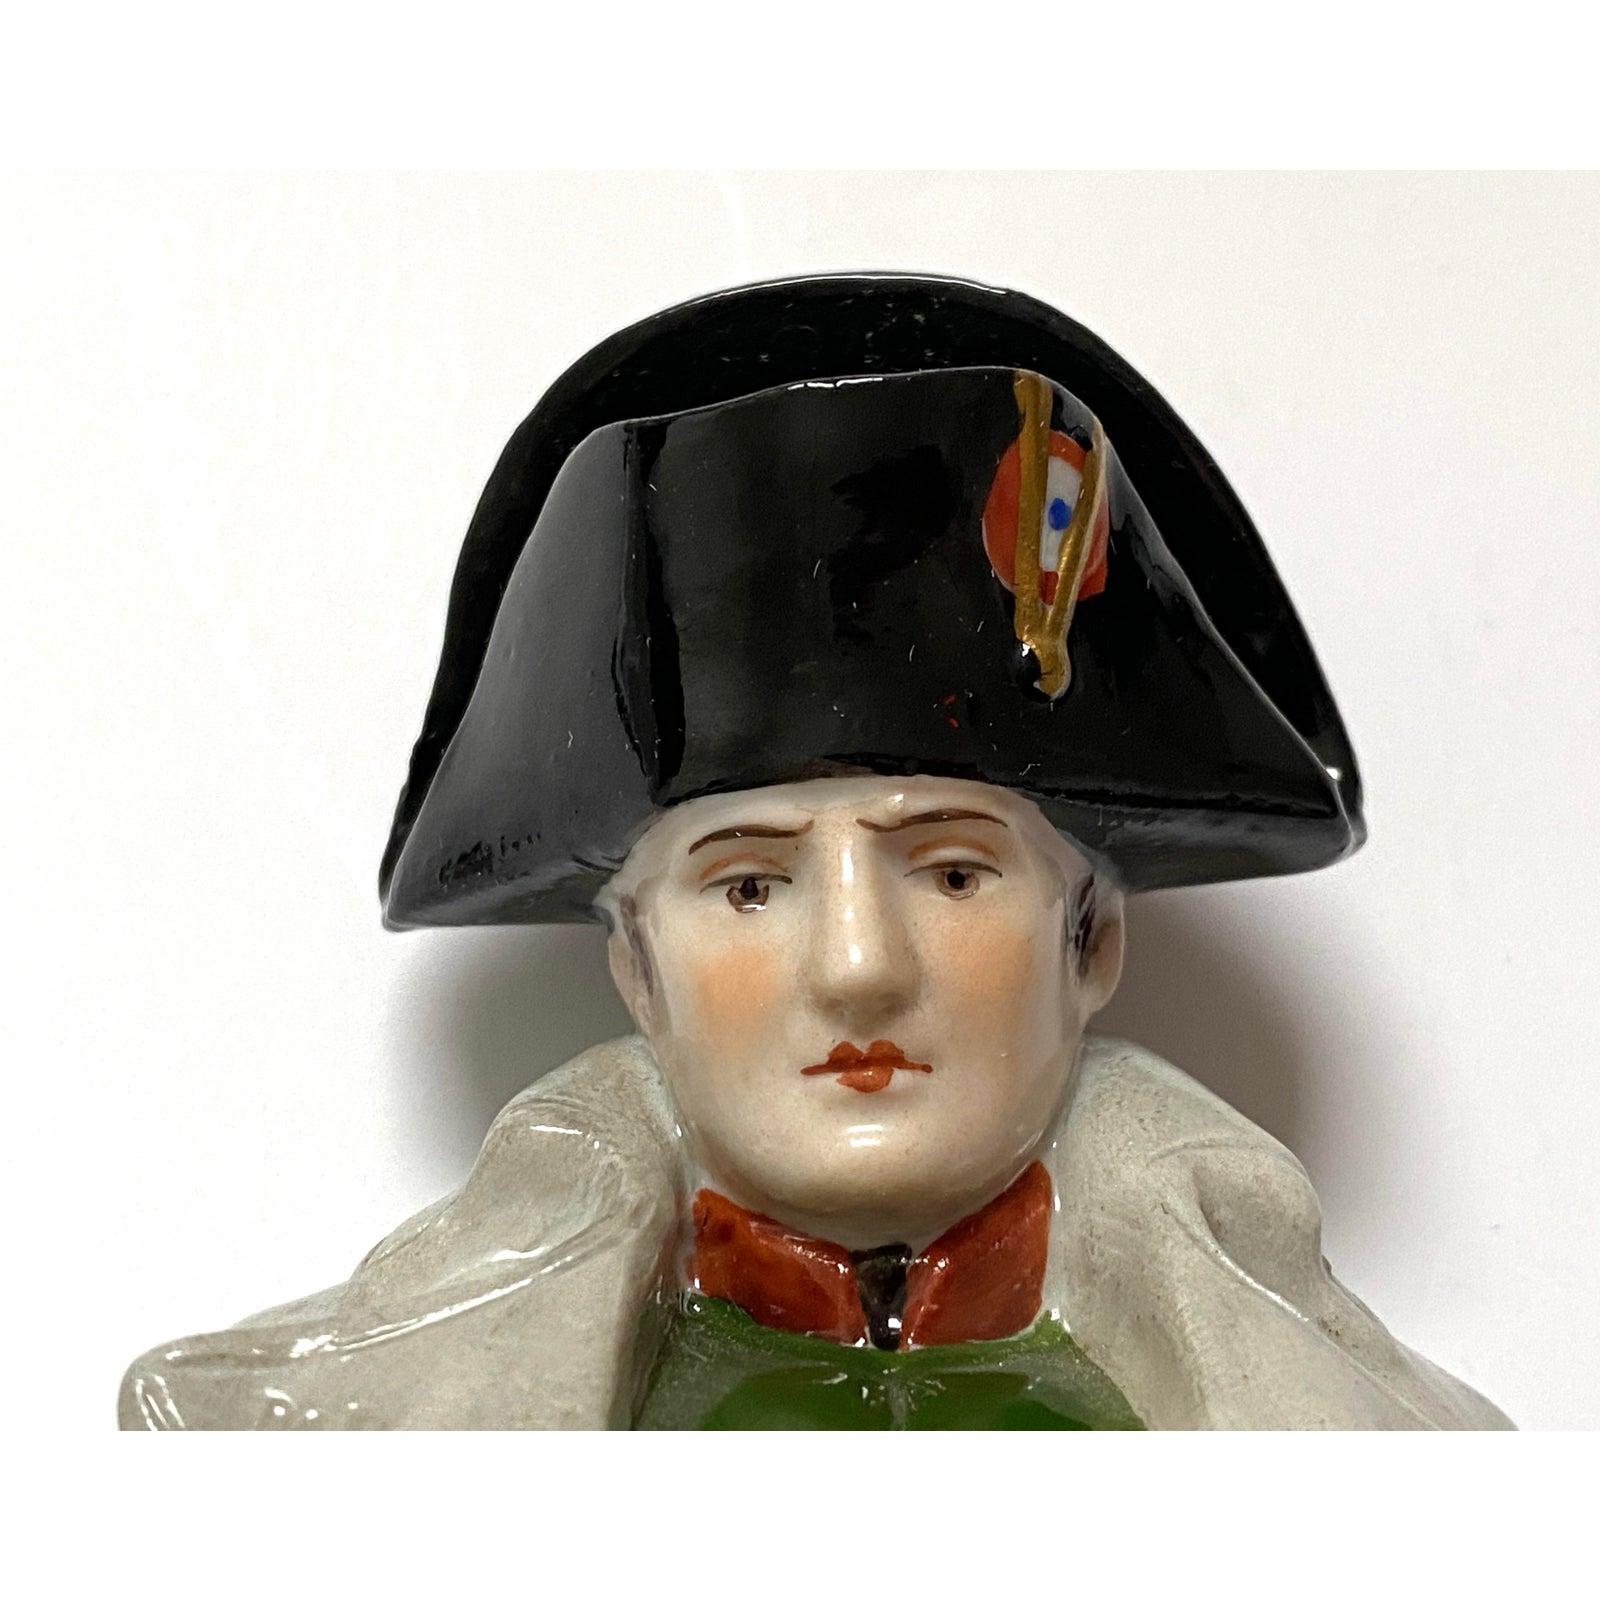 Diese Porzellanfigur von Napoleon stammt aus den 1920er bis 1930er Jahren und wurde von Hand bemalt.

Anmerkung: Herstellermarke auf der Rückseite/Unterseite des Sockels.